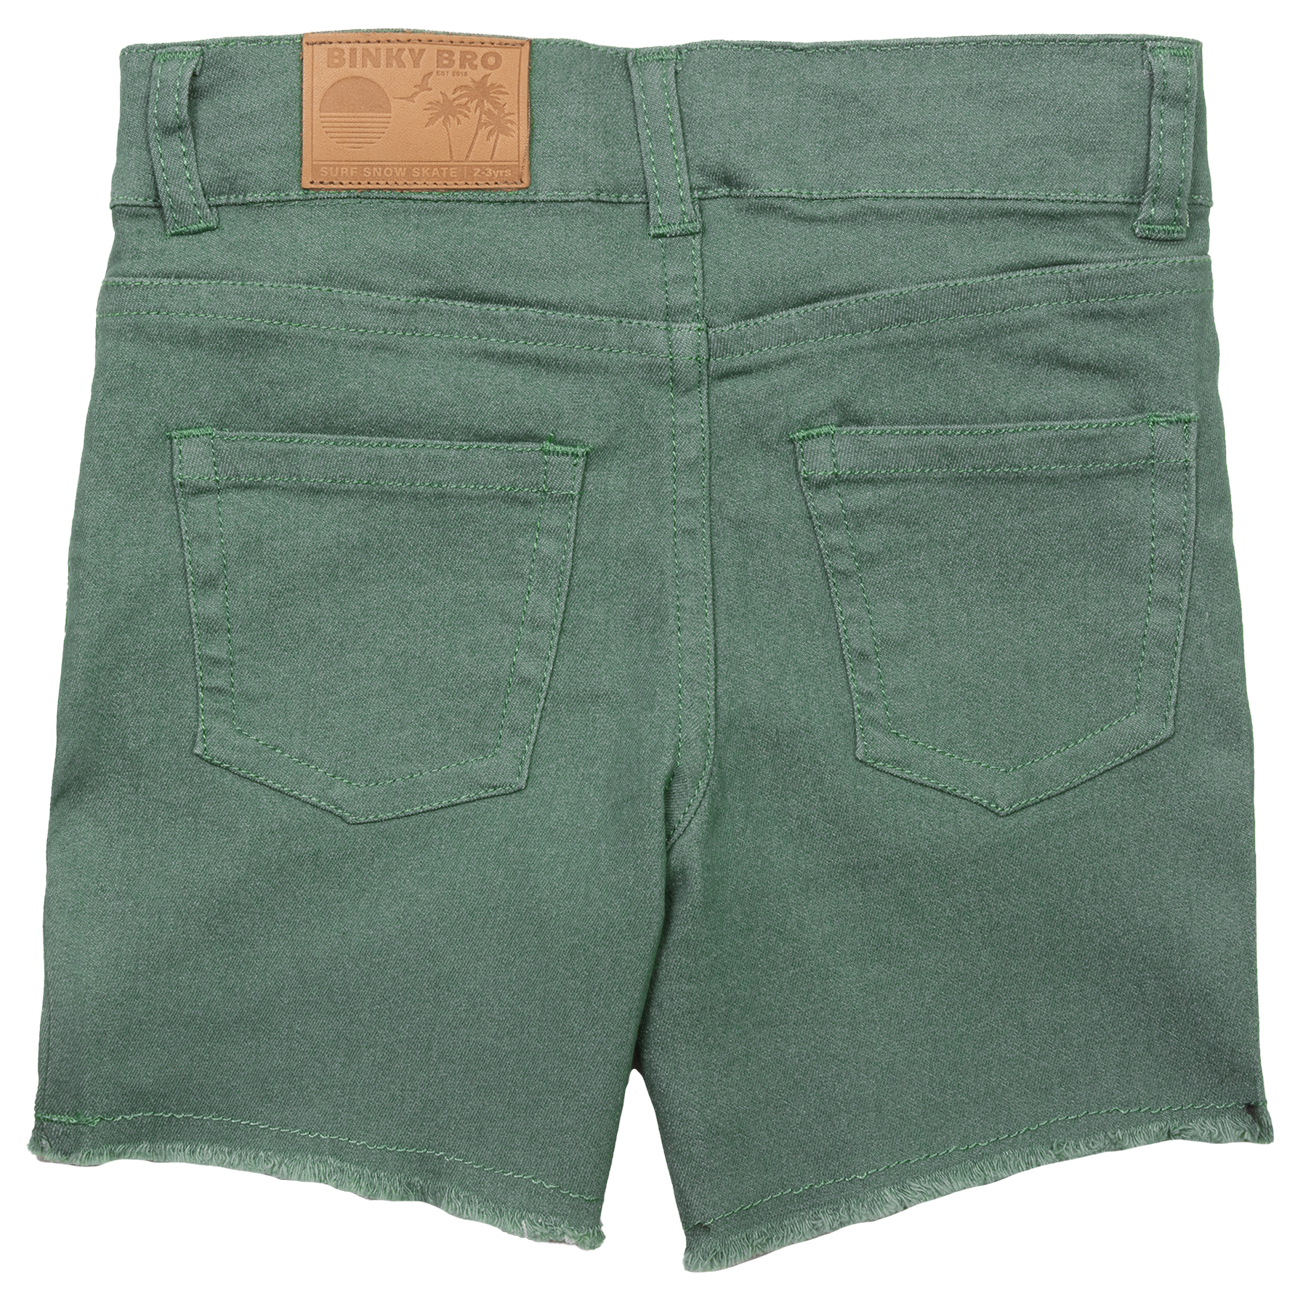 Waco Shorts (Green): 12 months - 18 months